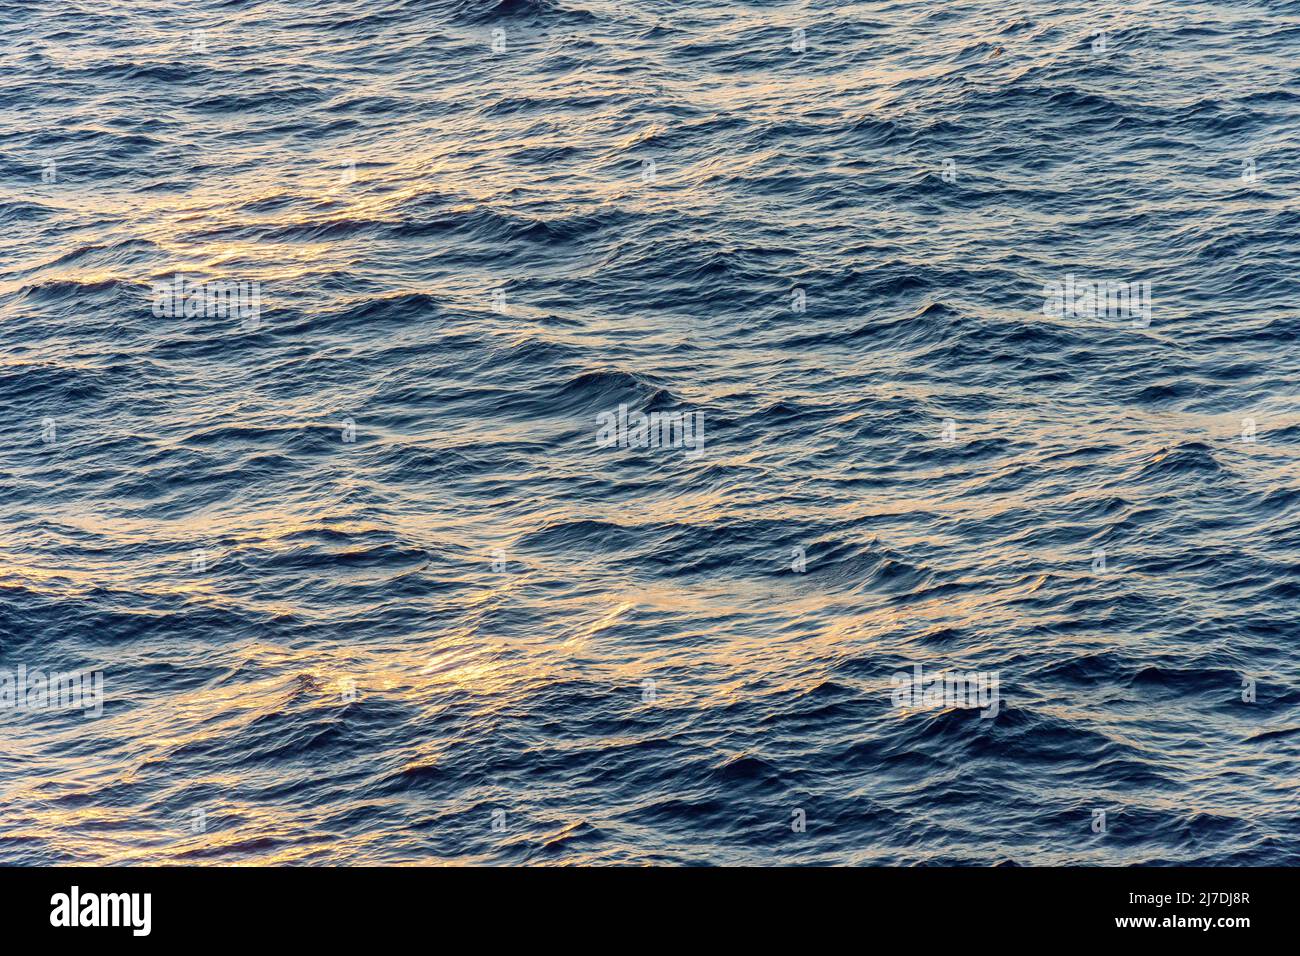 Vista del mar tranquilo desde la cubierta del barco crucero Marella Explorer II, Mar Caribe, Antillas Mayores, Caribe Foto de stock